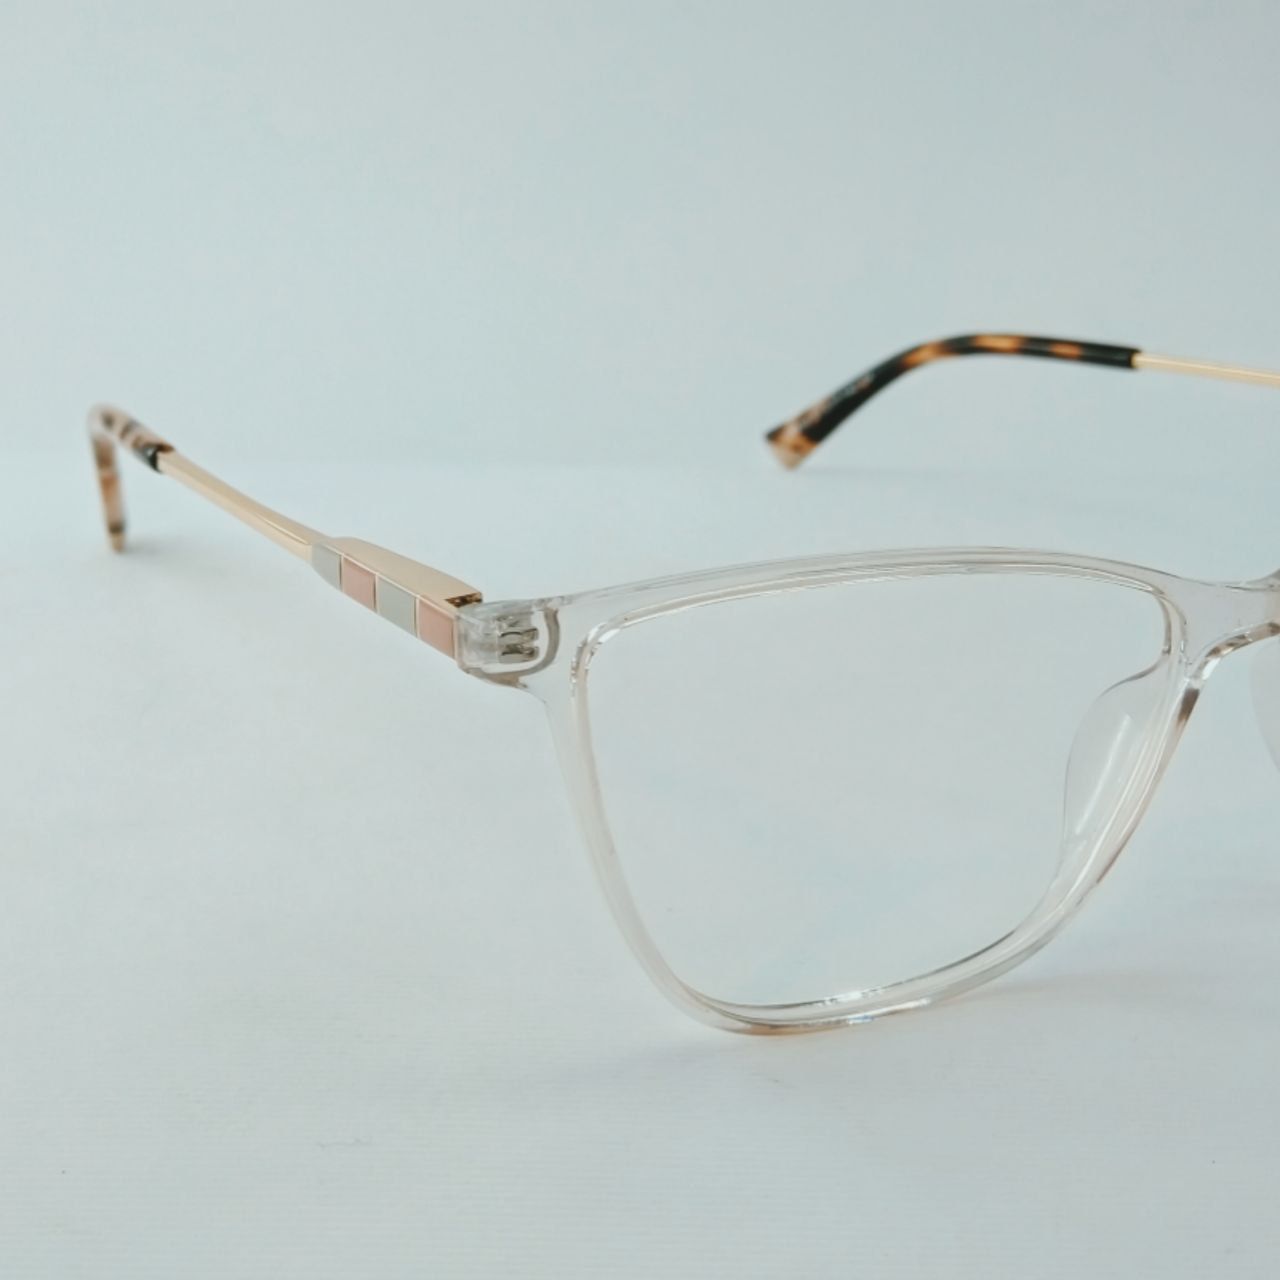 فریم عینک طبی زنانه تیفانی اند کو مدل T818 -  - 3